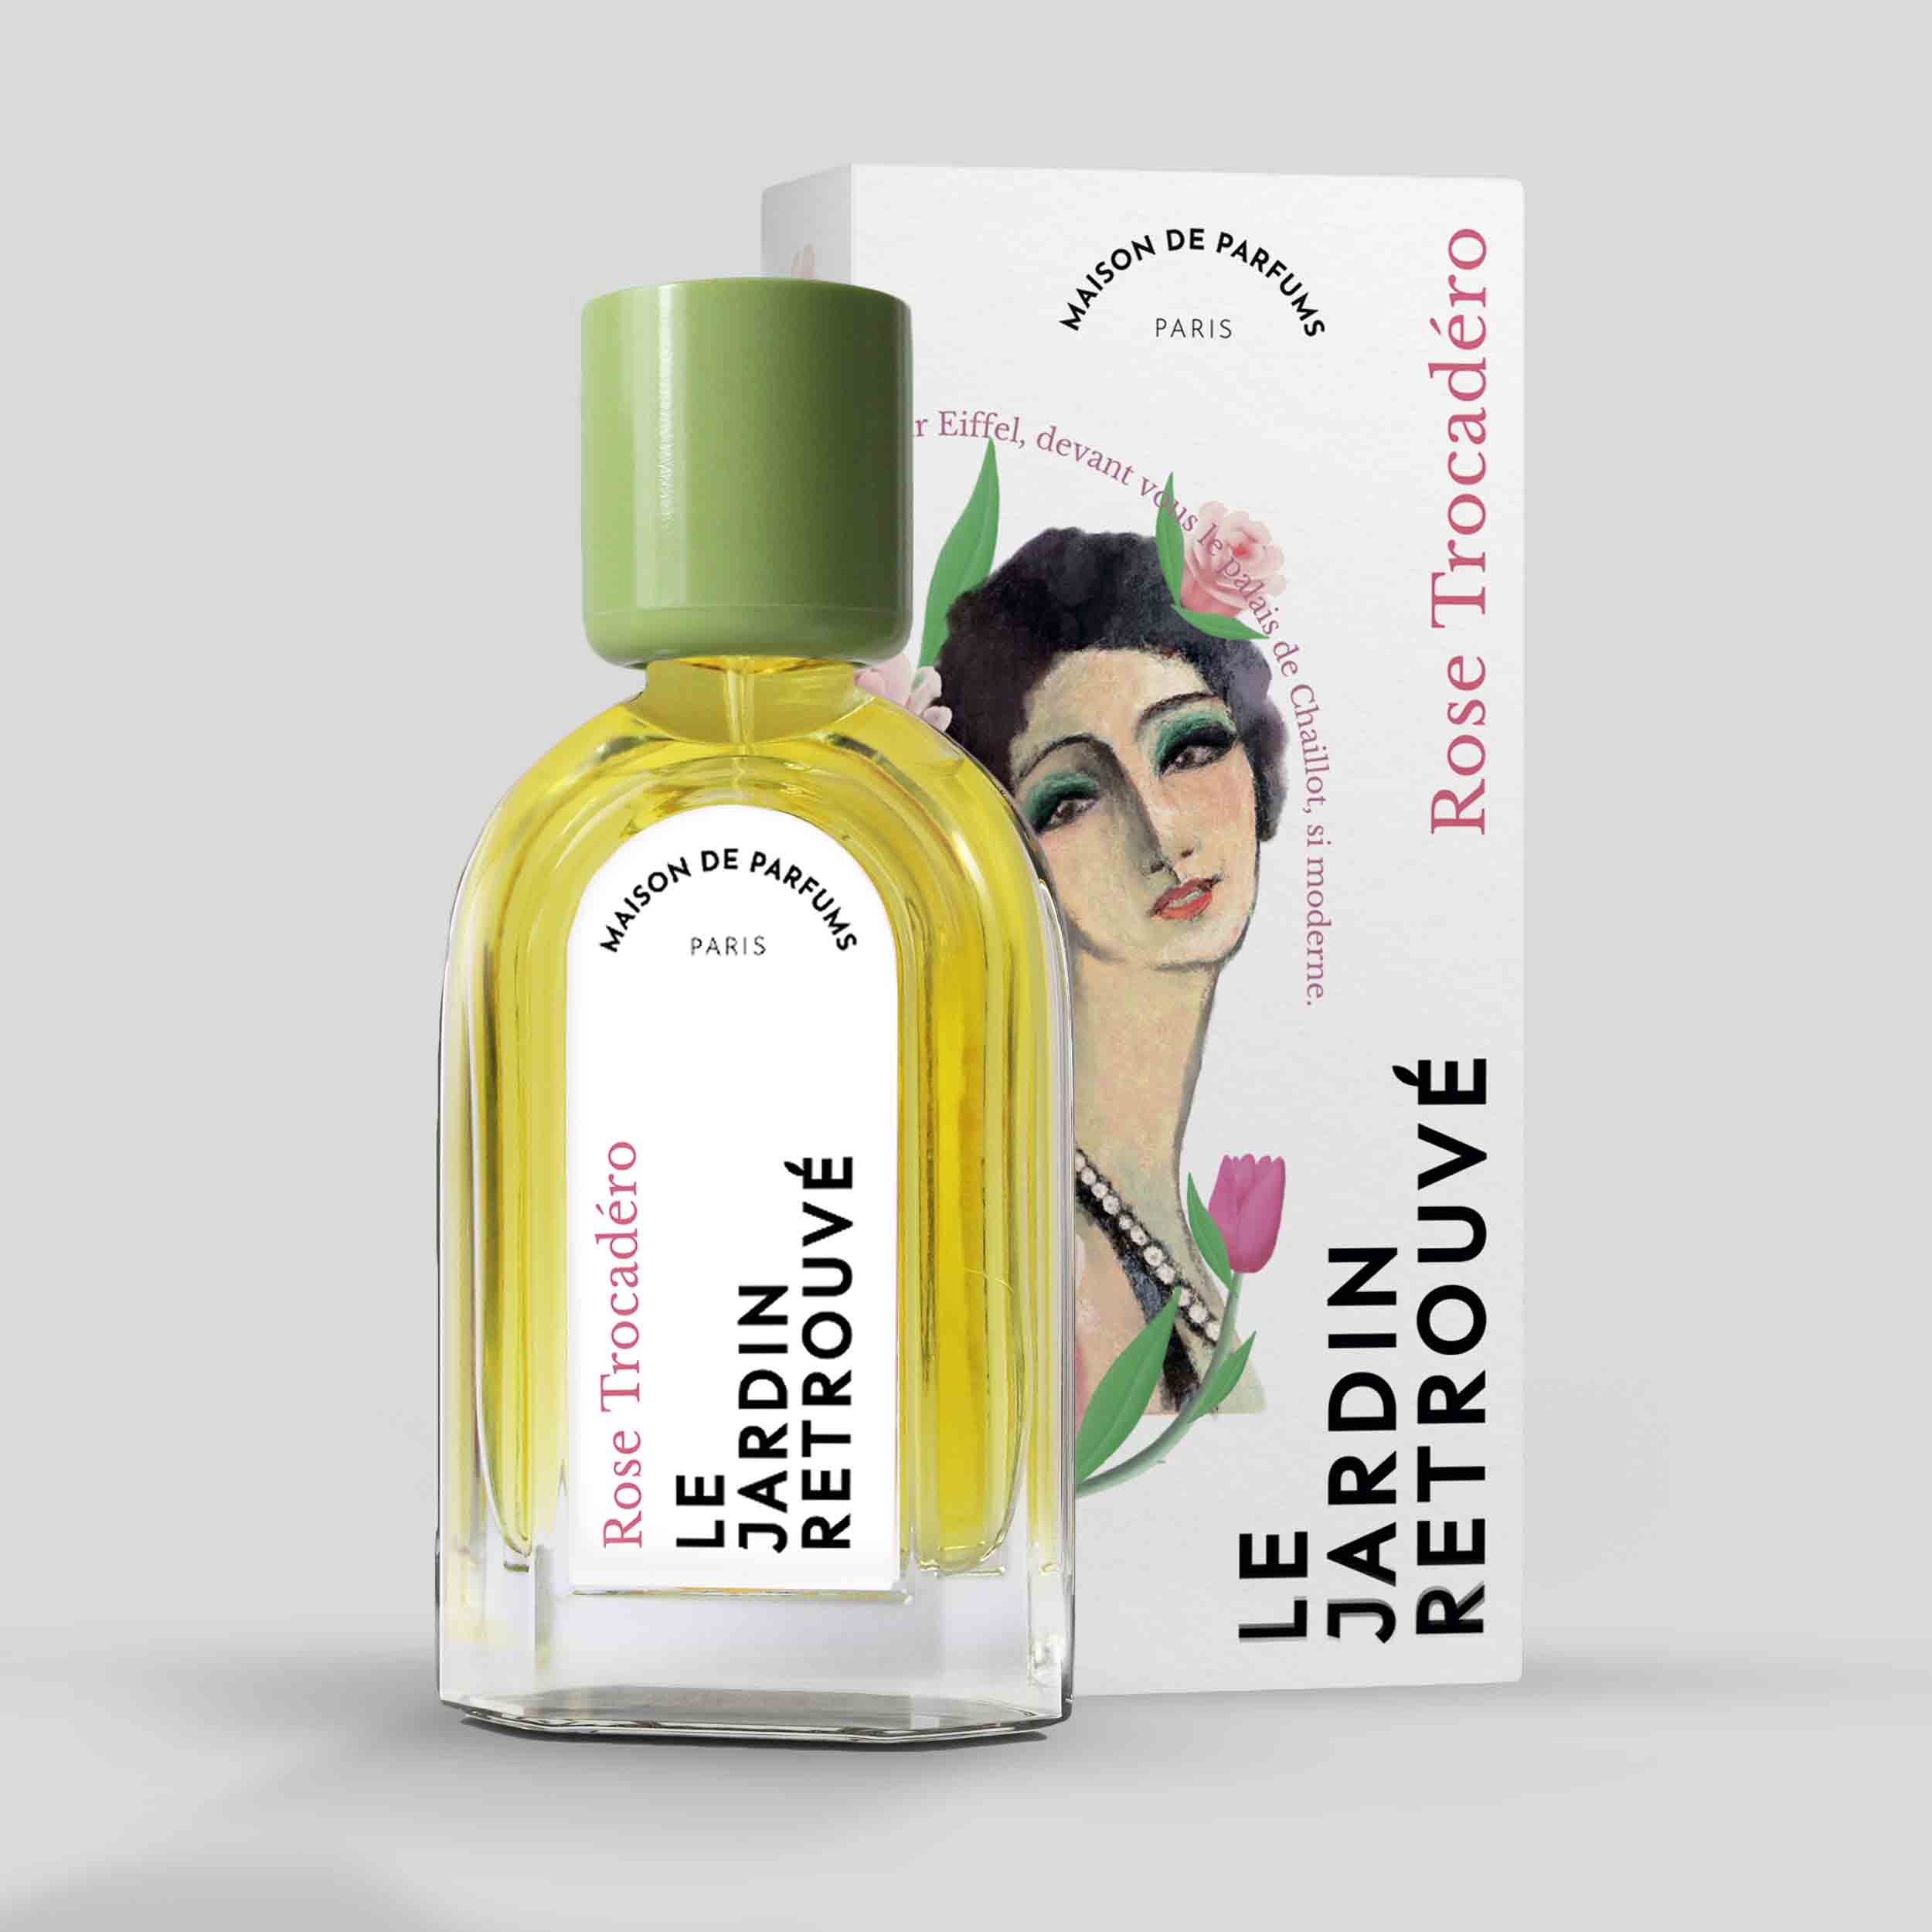 Rose Trocadéro Eau de Parfum 50ml Bottle and Box by Le Jardin Retrouvé